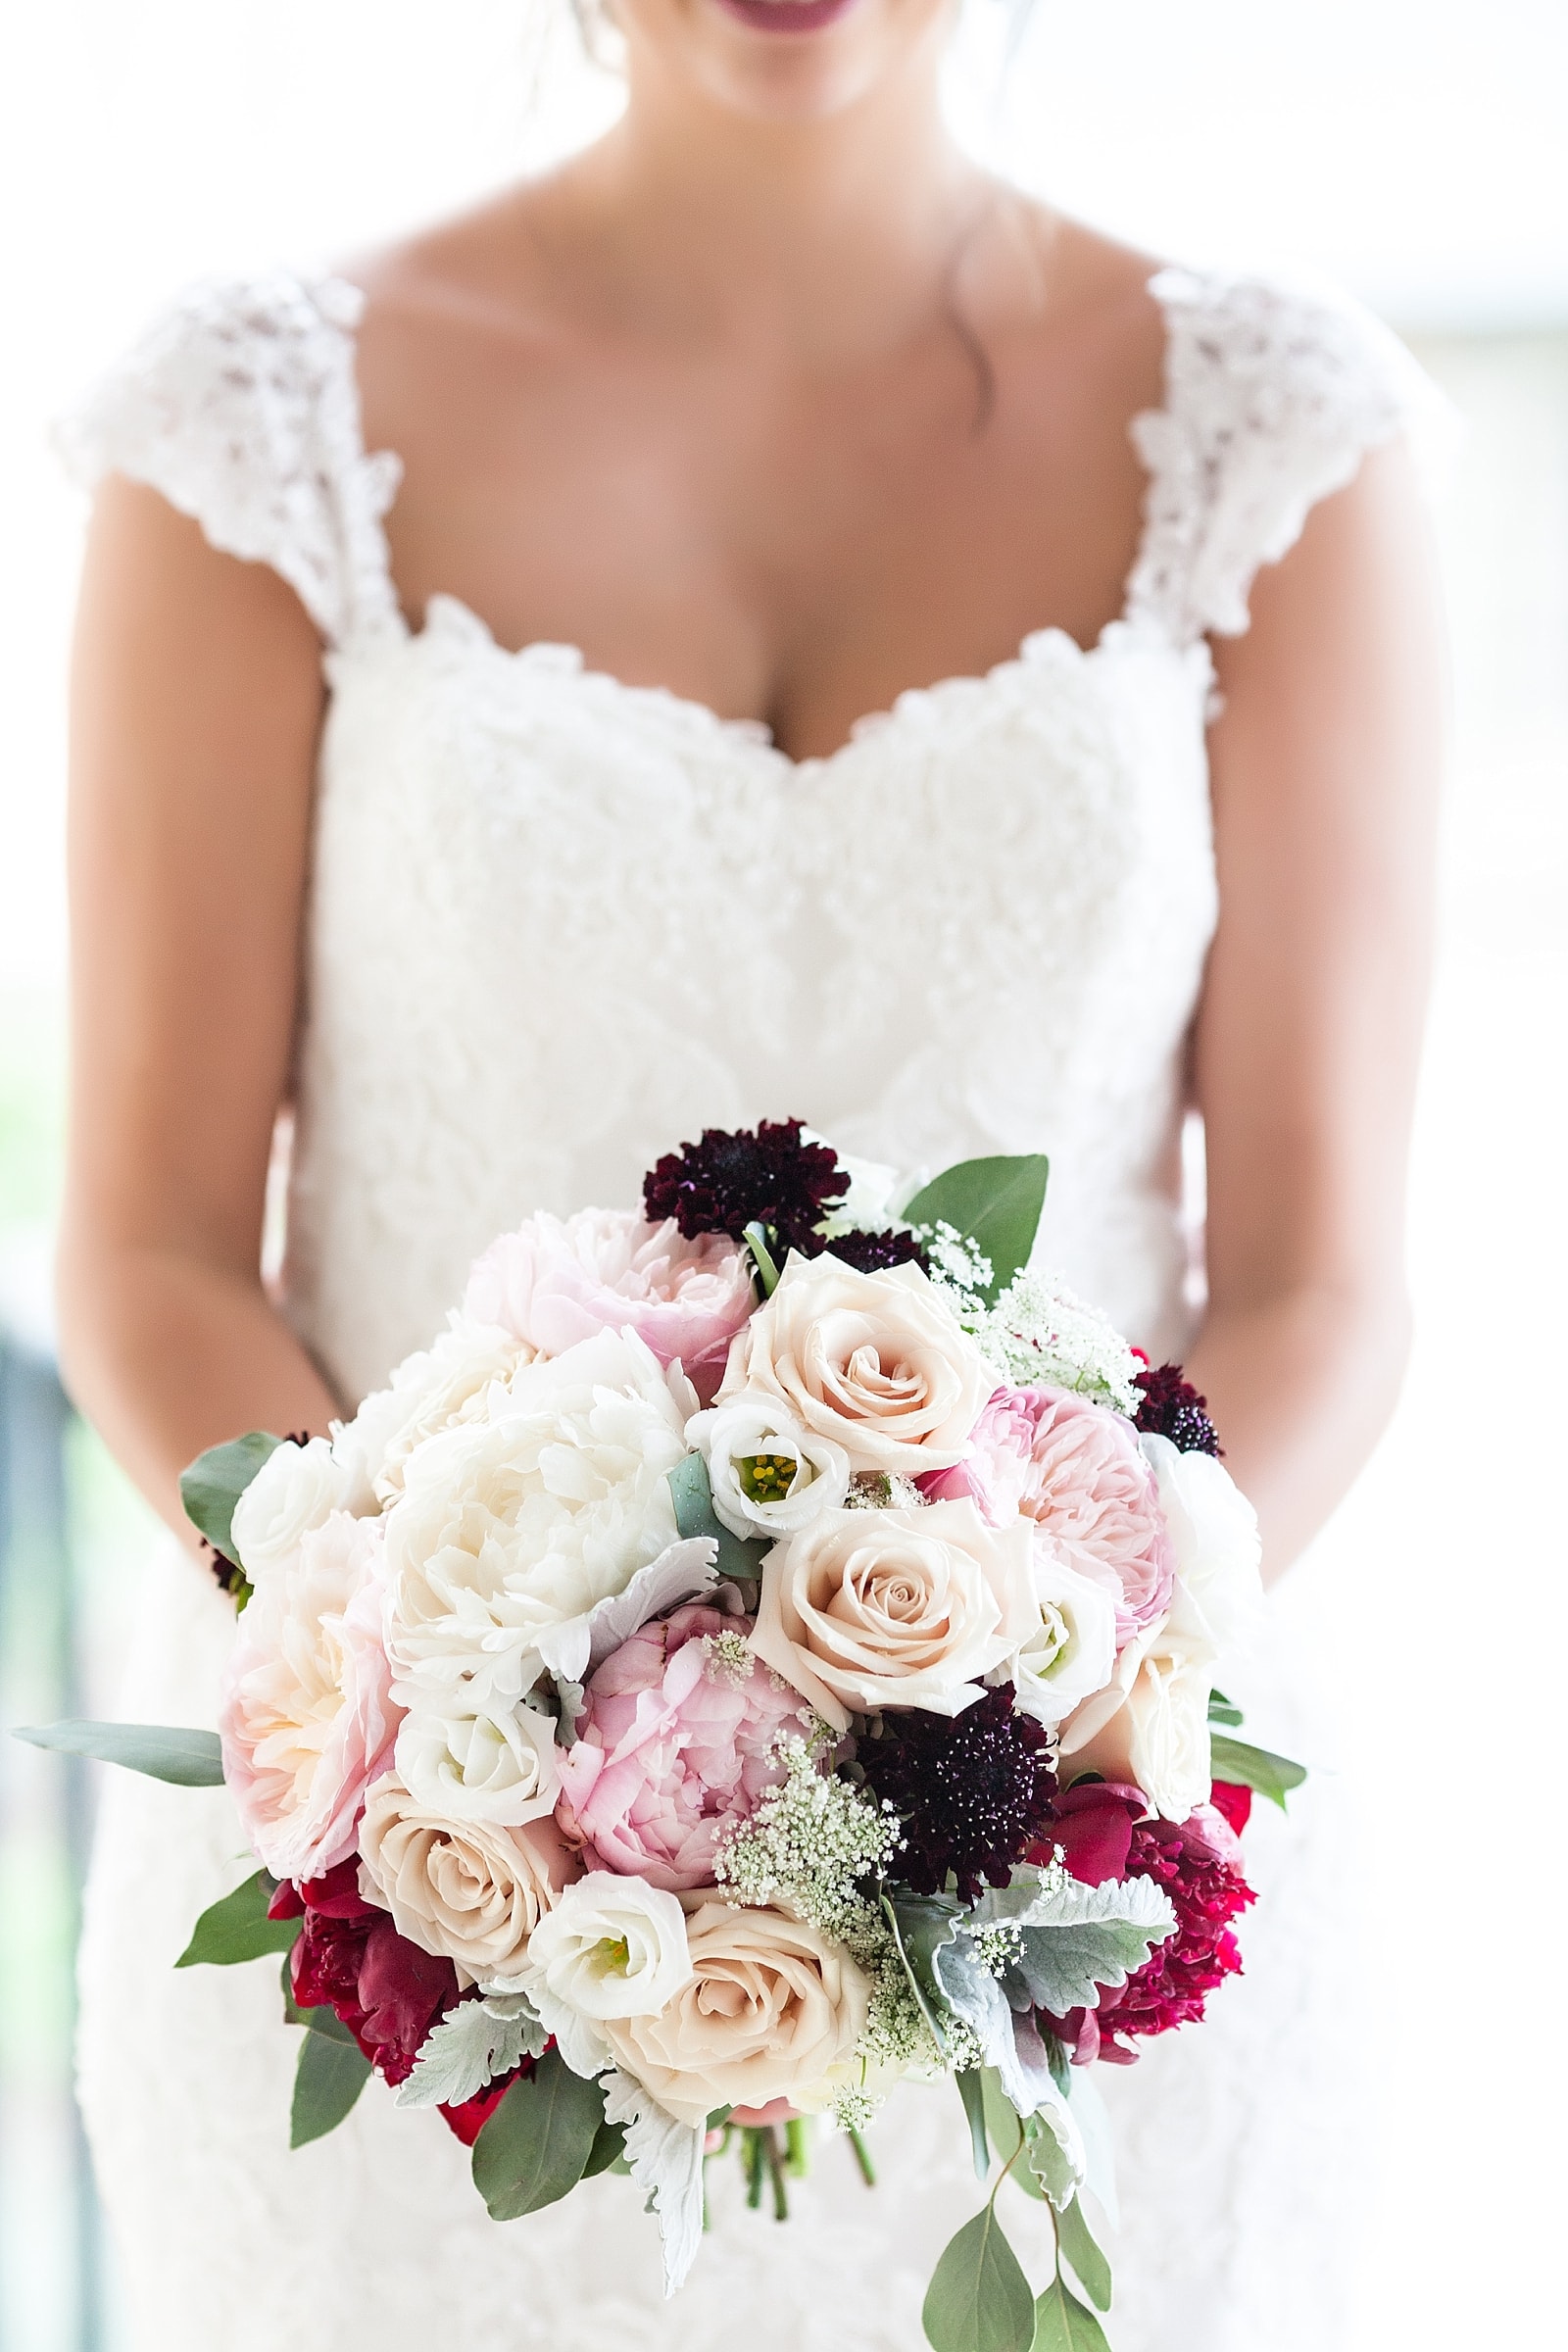 Bridal portrait, bridal bouquet, flowers, wedding gown 